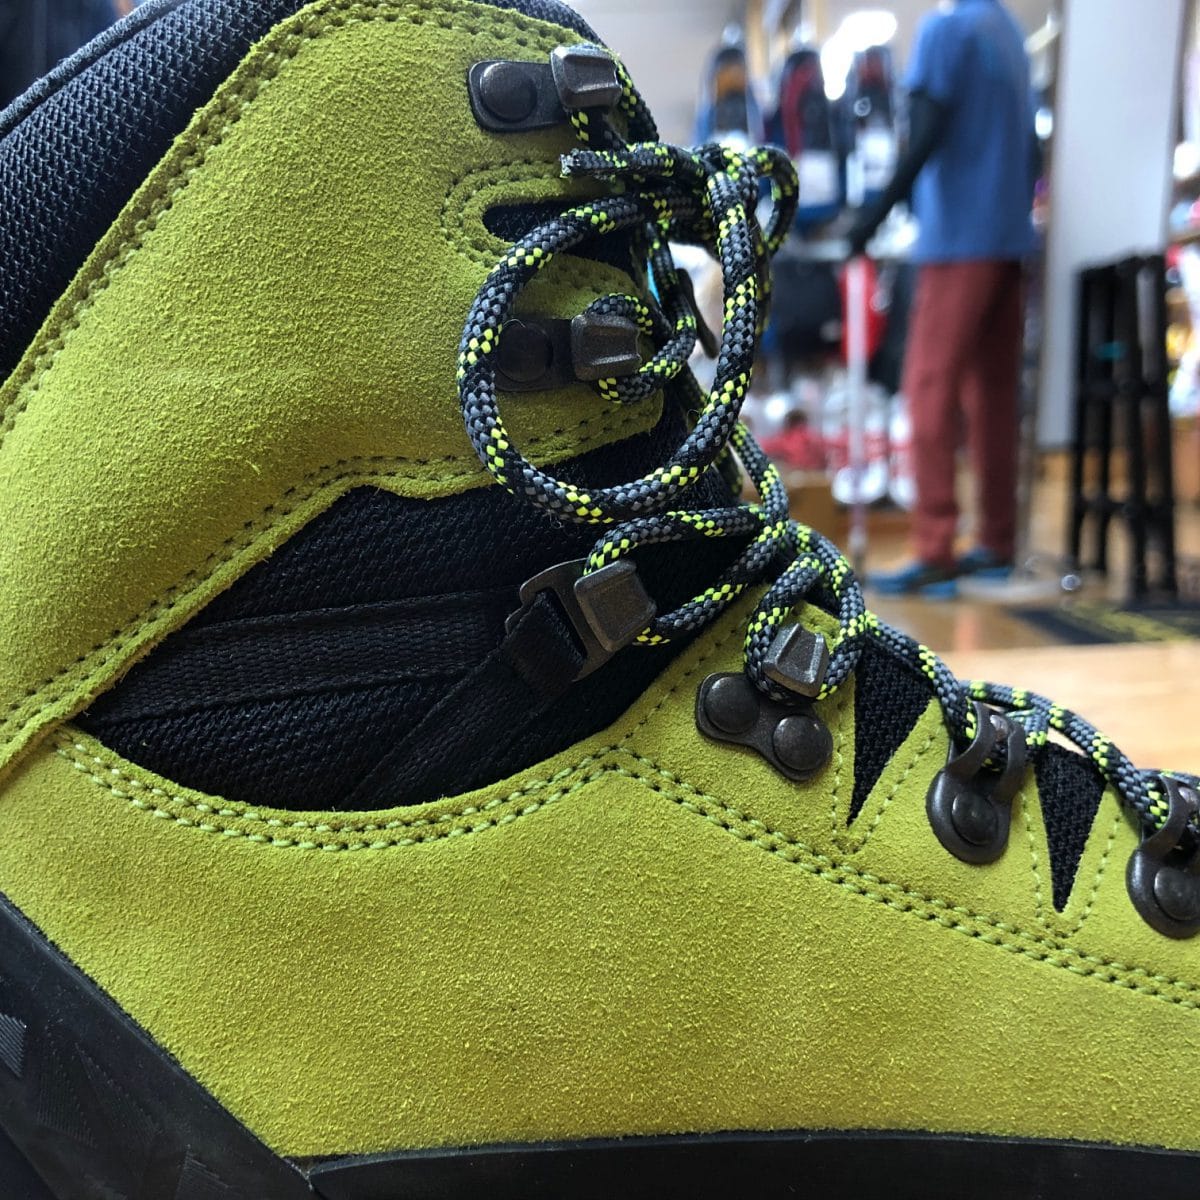 ゴアテックスとプリマロフトを合わせた保温性バツグンの冬山用登山靴